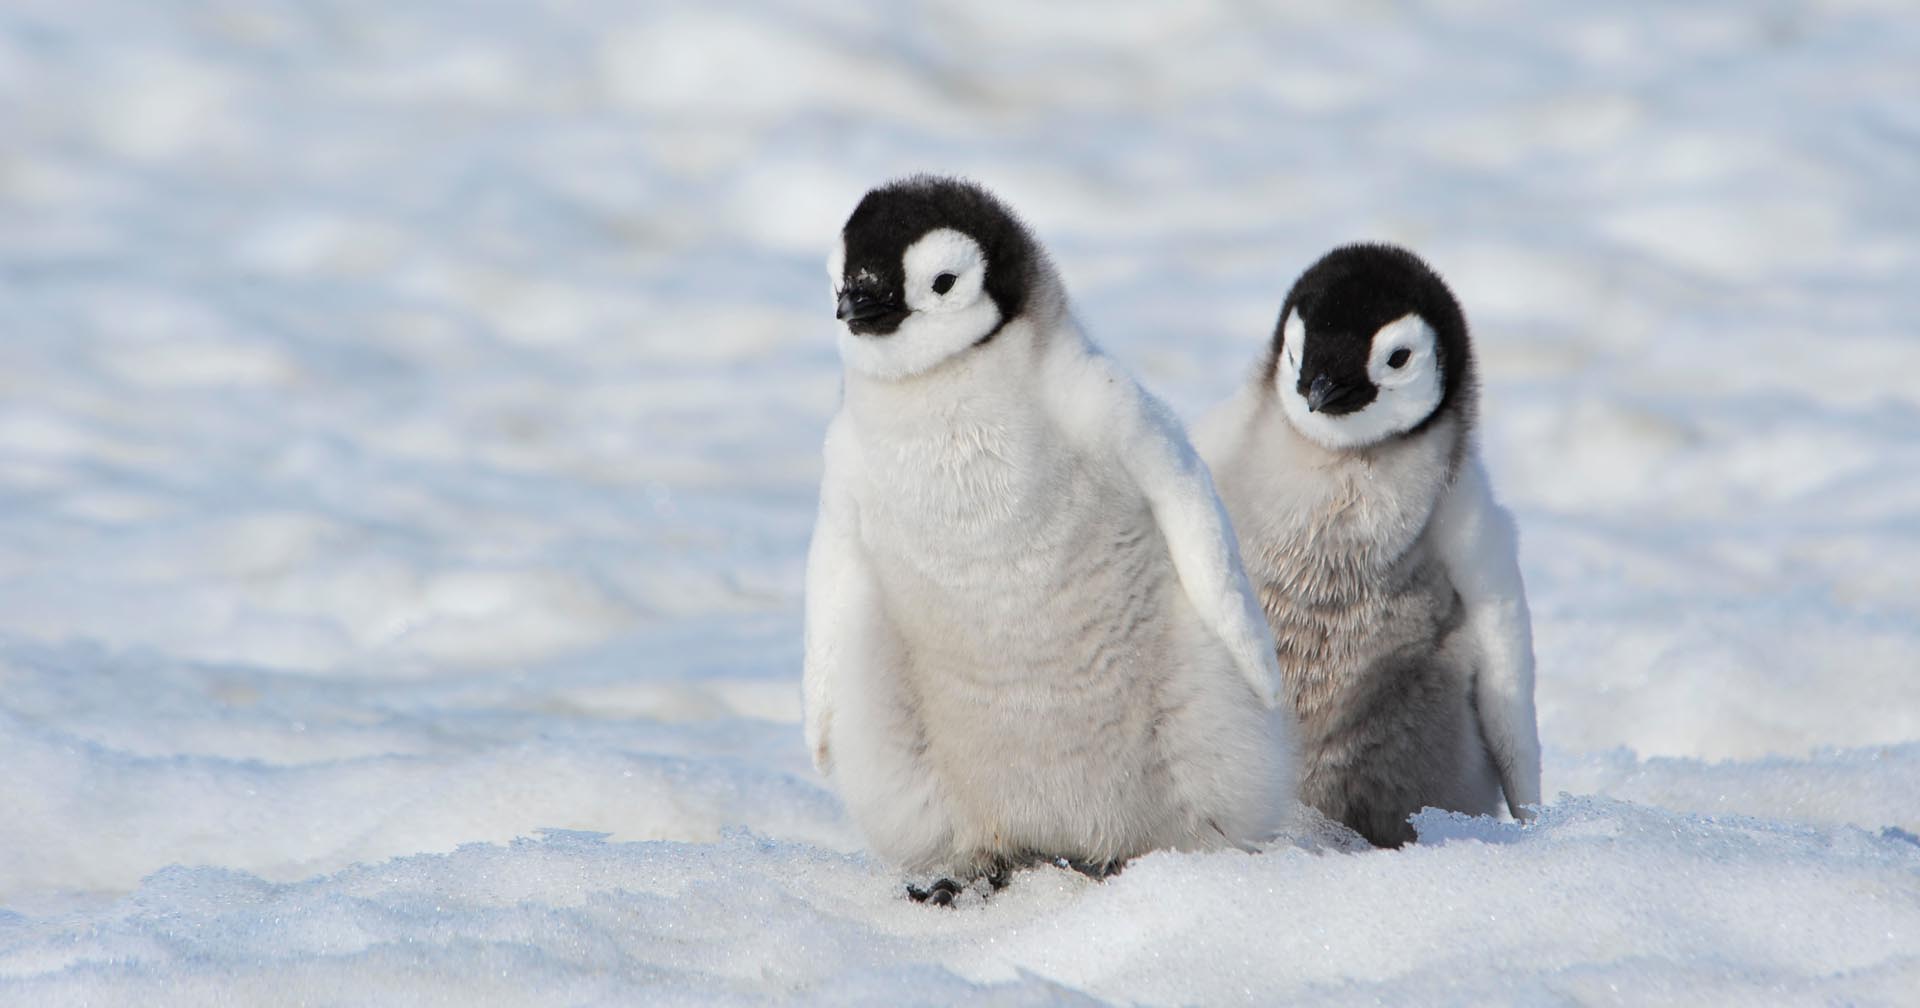 นักวิทย์ฯ เผย เพนกวินอาจเป็นสัตว์ต่างดาว หลังตรวจพบเคมีจากดาวศุกร์ใน “อึ” ของพวกมัน